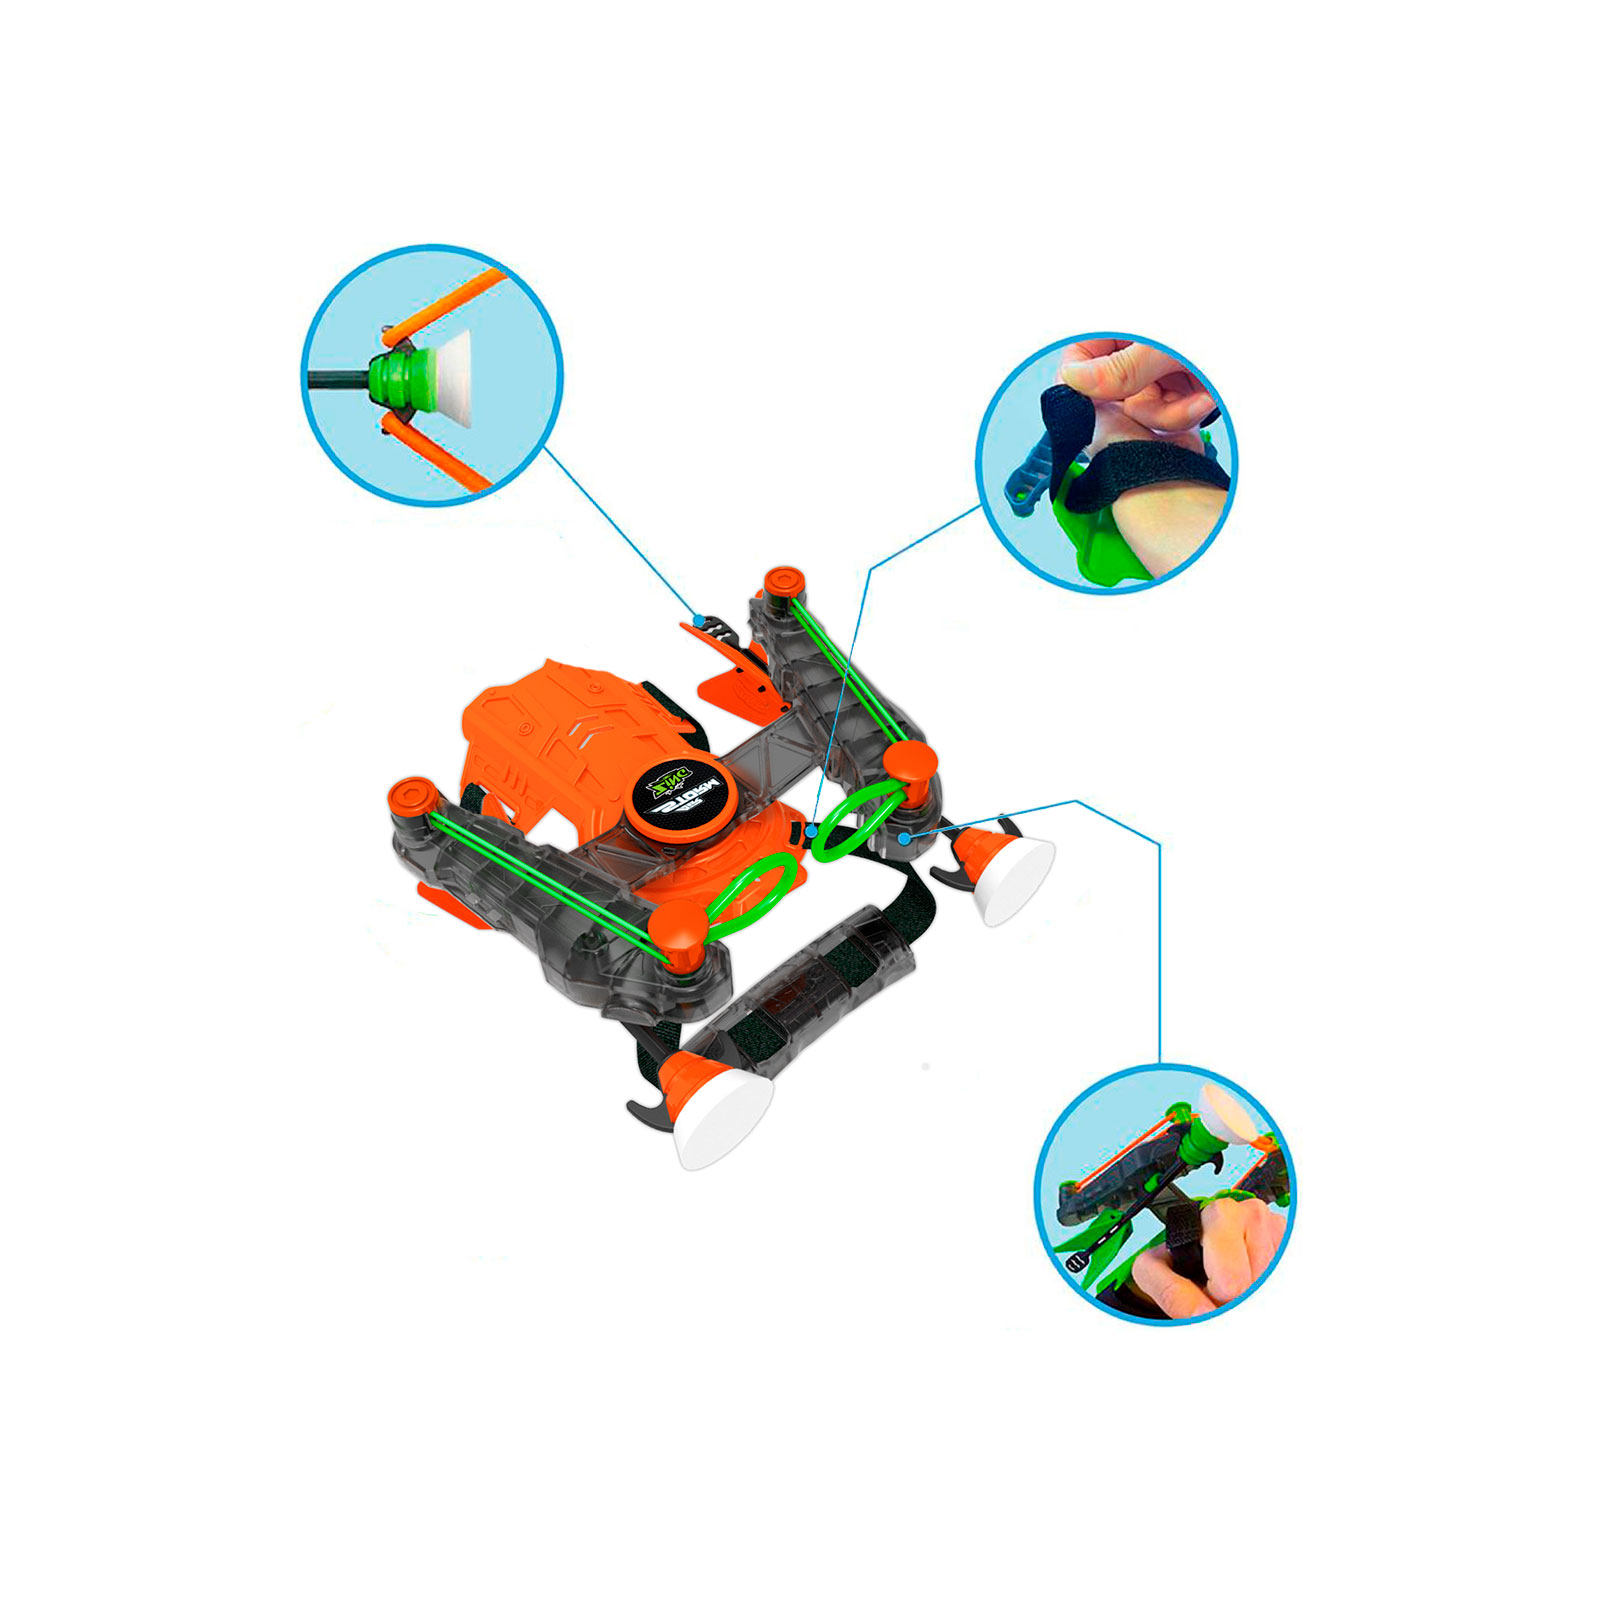 Игрушечное оружие Zing лук на запястье Air Storm - Wrist bow оранж (AS140O) изображение 4